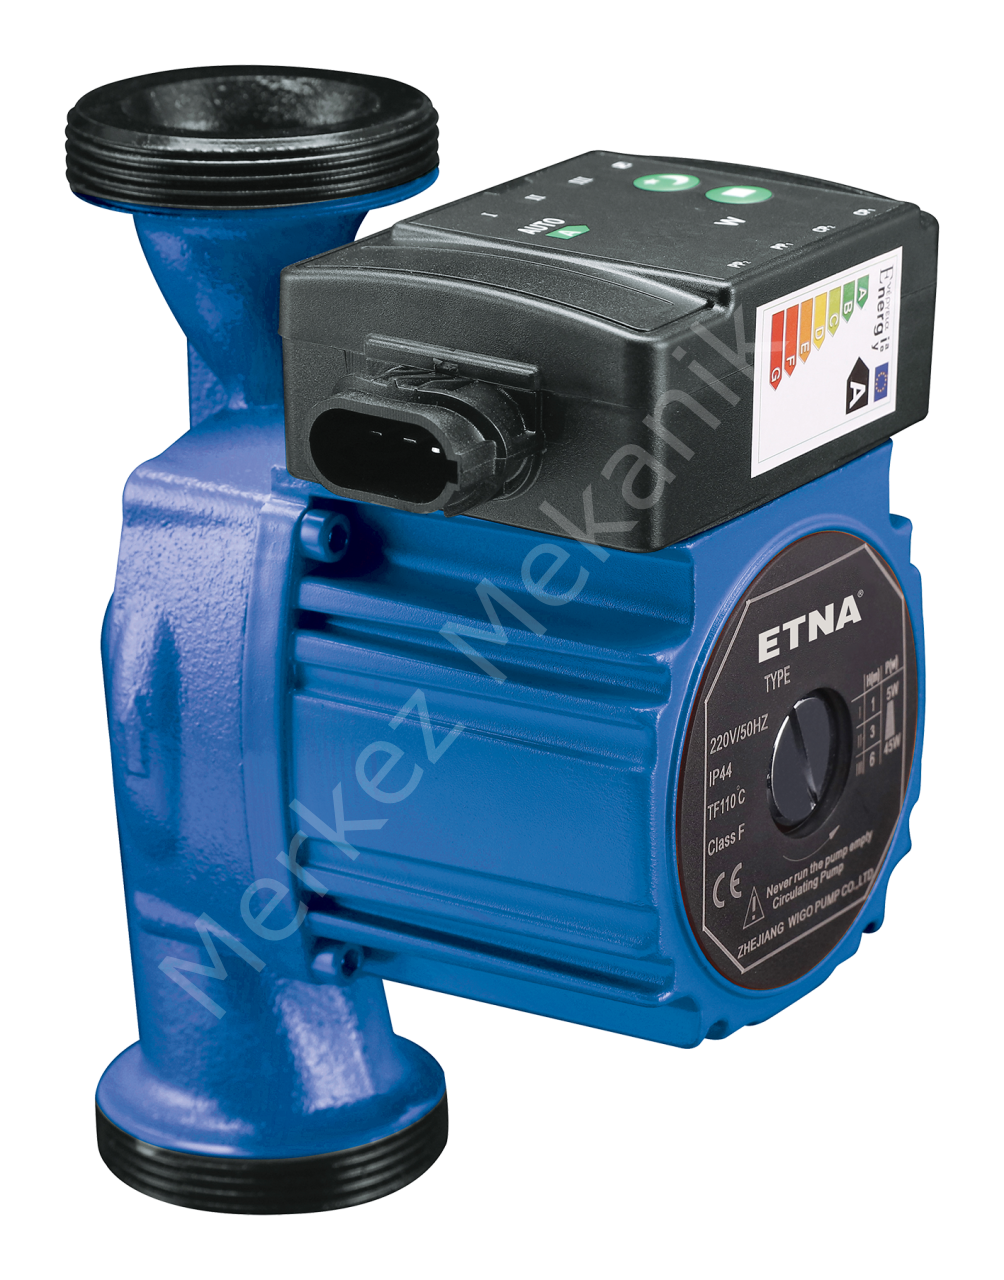 ETNA ECP 25-6-180 Frekans Kontrollü Sirkülasyon Pompası